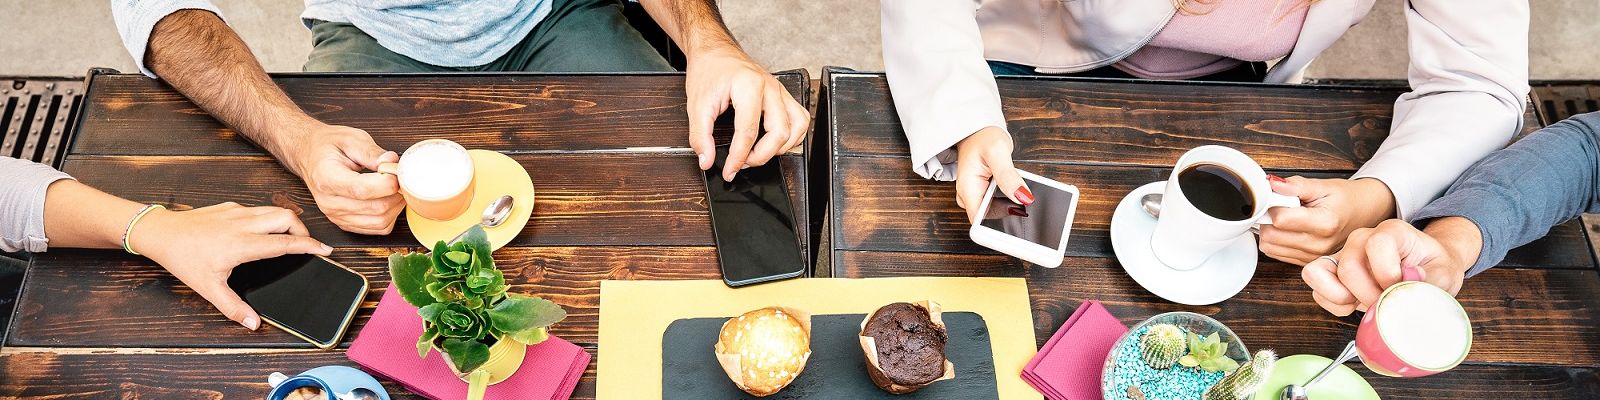 Verschiedene Hände mit Kaffeetassen und Smartphones von oben an einem Holztisch